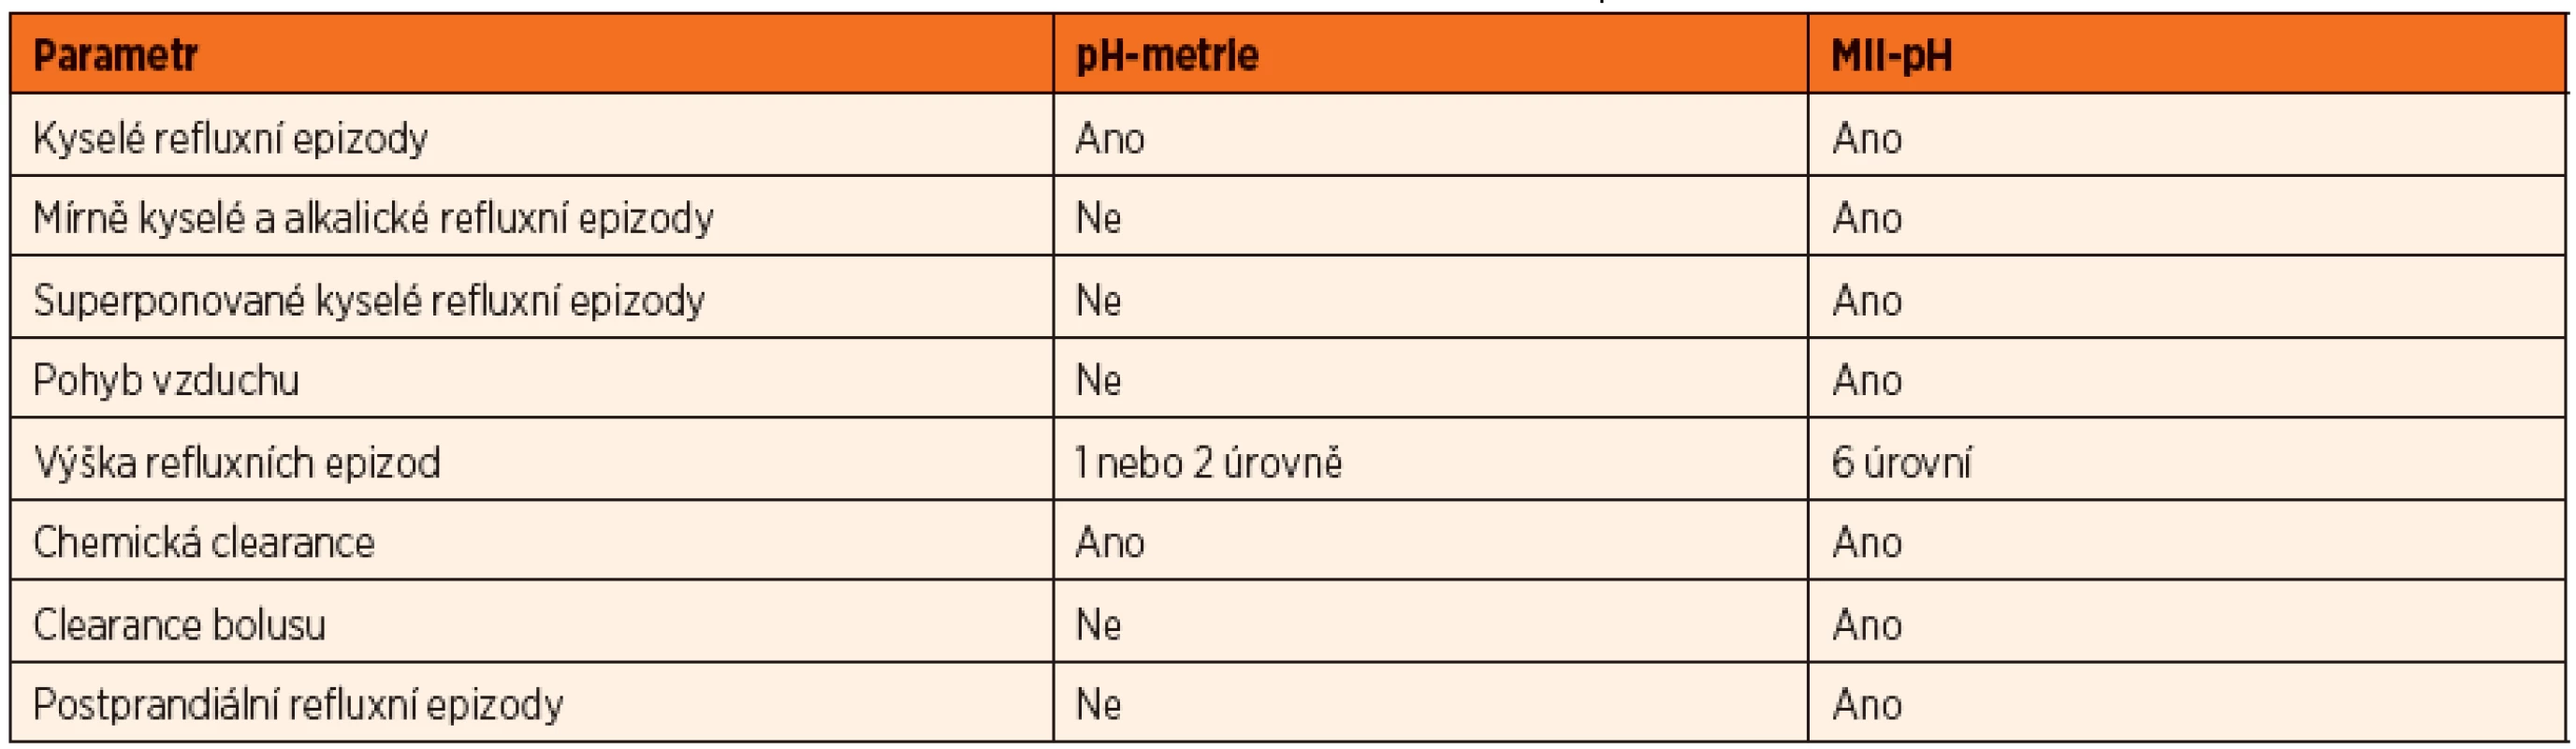 Porovnání pH-metrie a MII ve schopnosti rozpoznat různé parametry (podle [35]).